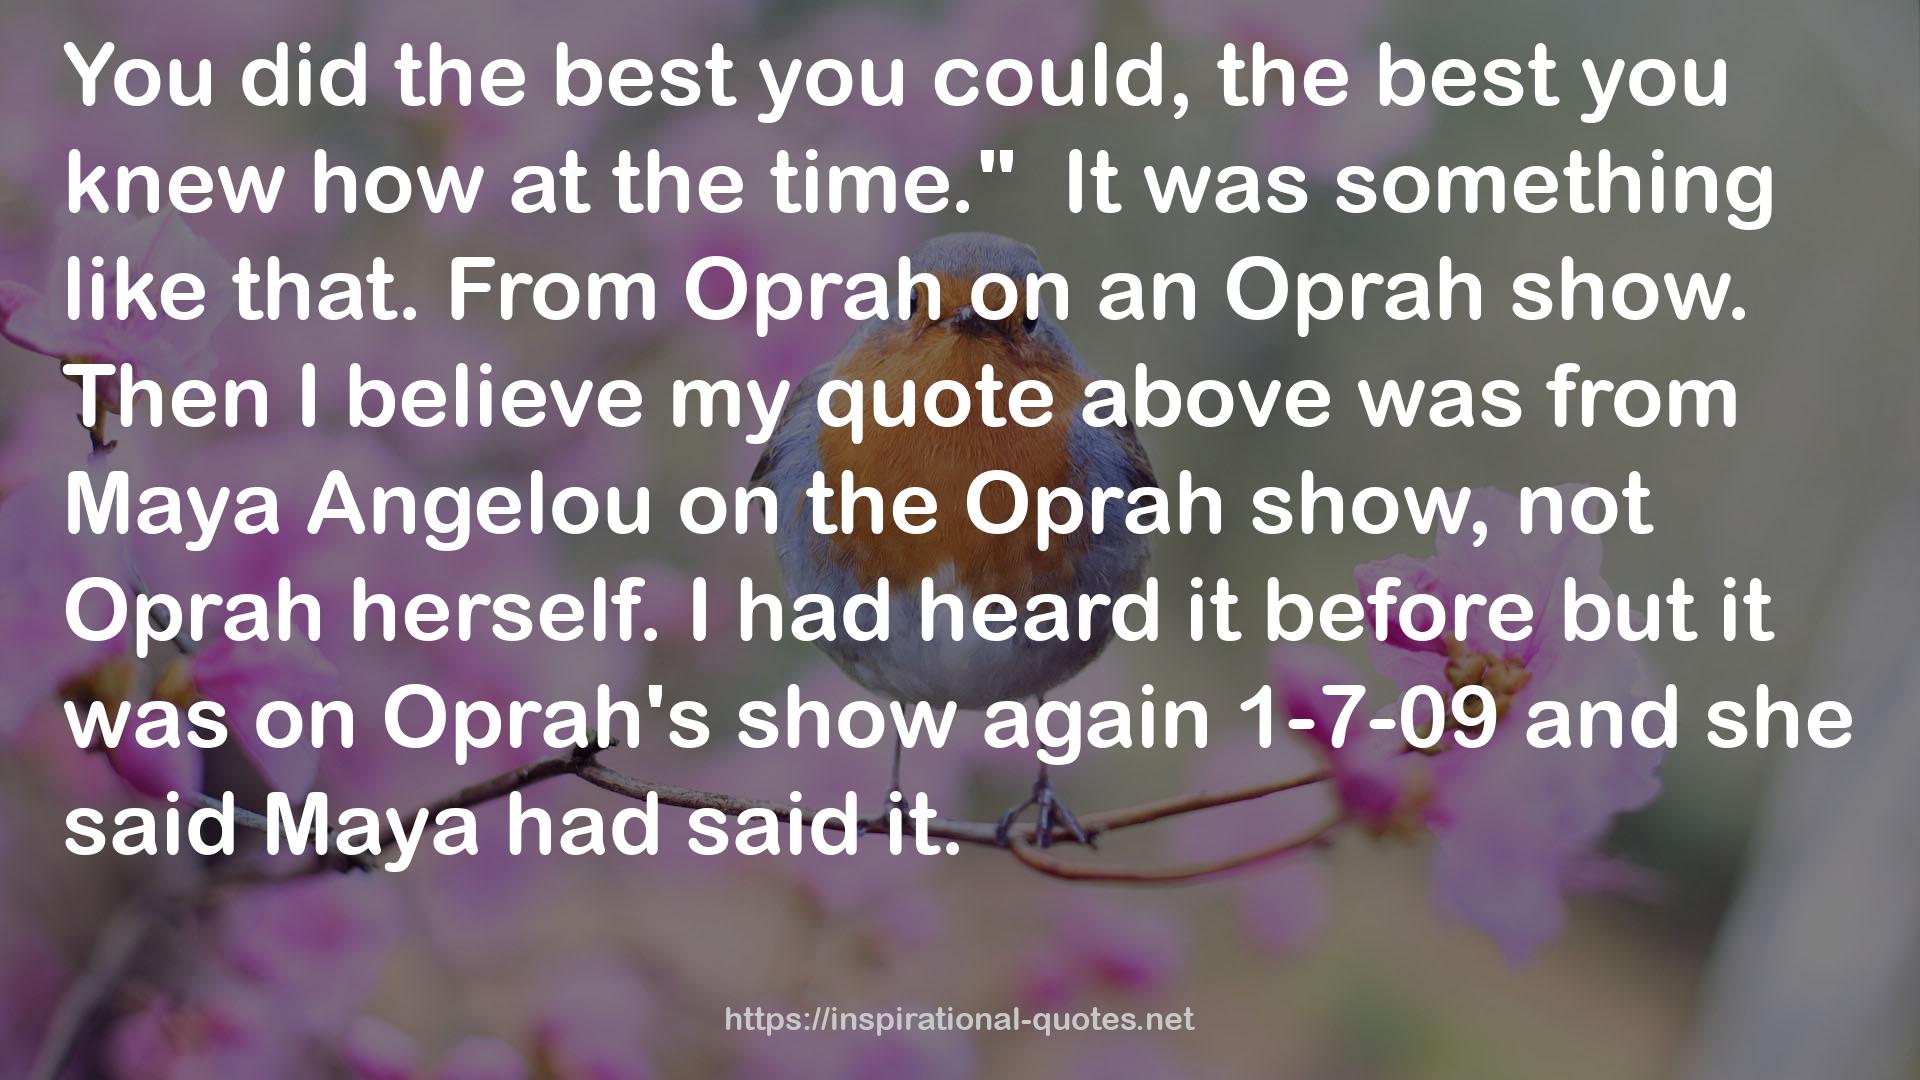 Oprah's show  QUOTES